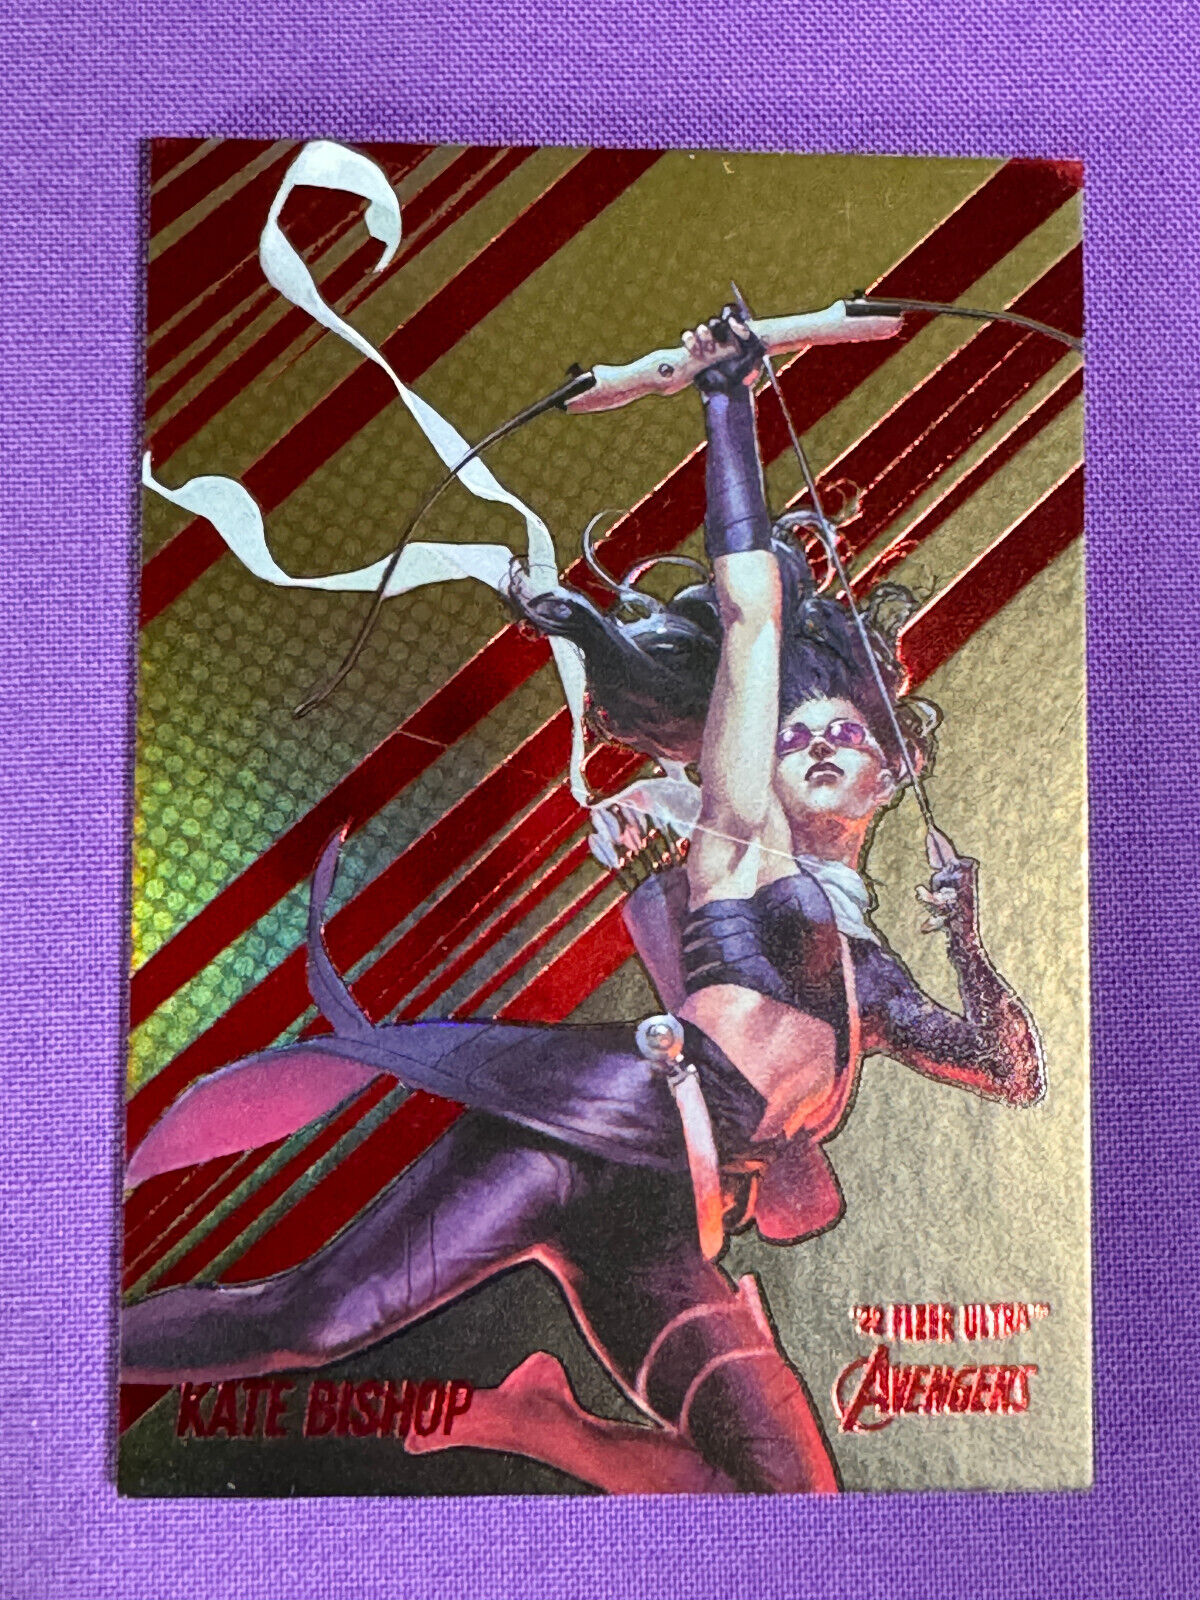 2022 Fleer Ultra Avengers Kate Bishop Hawkeye GOLD RAINBOW FOIL SSP Parallel #37